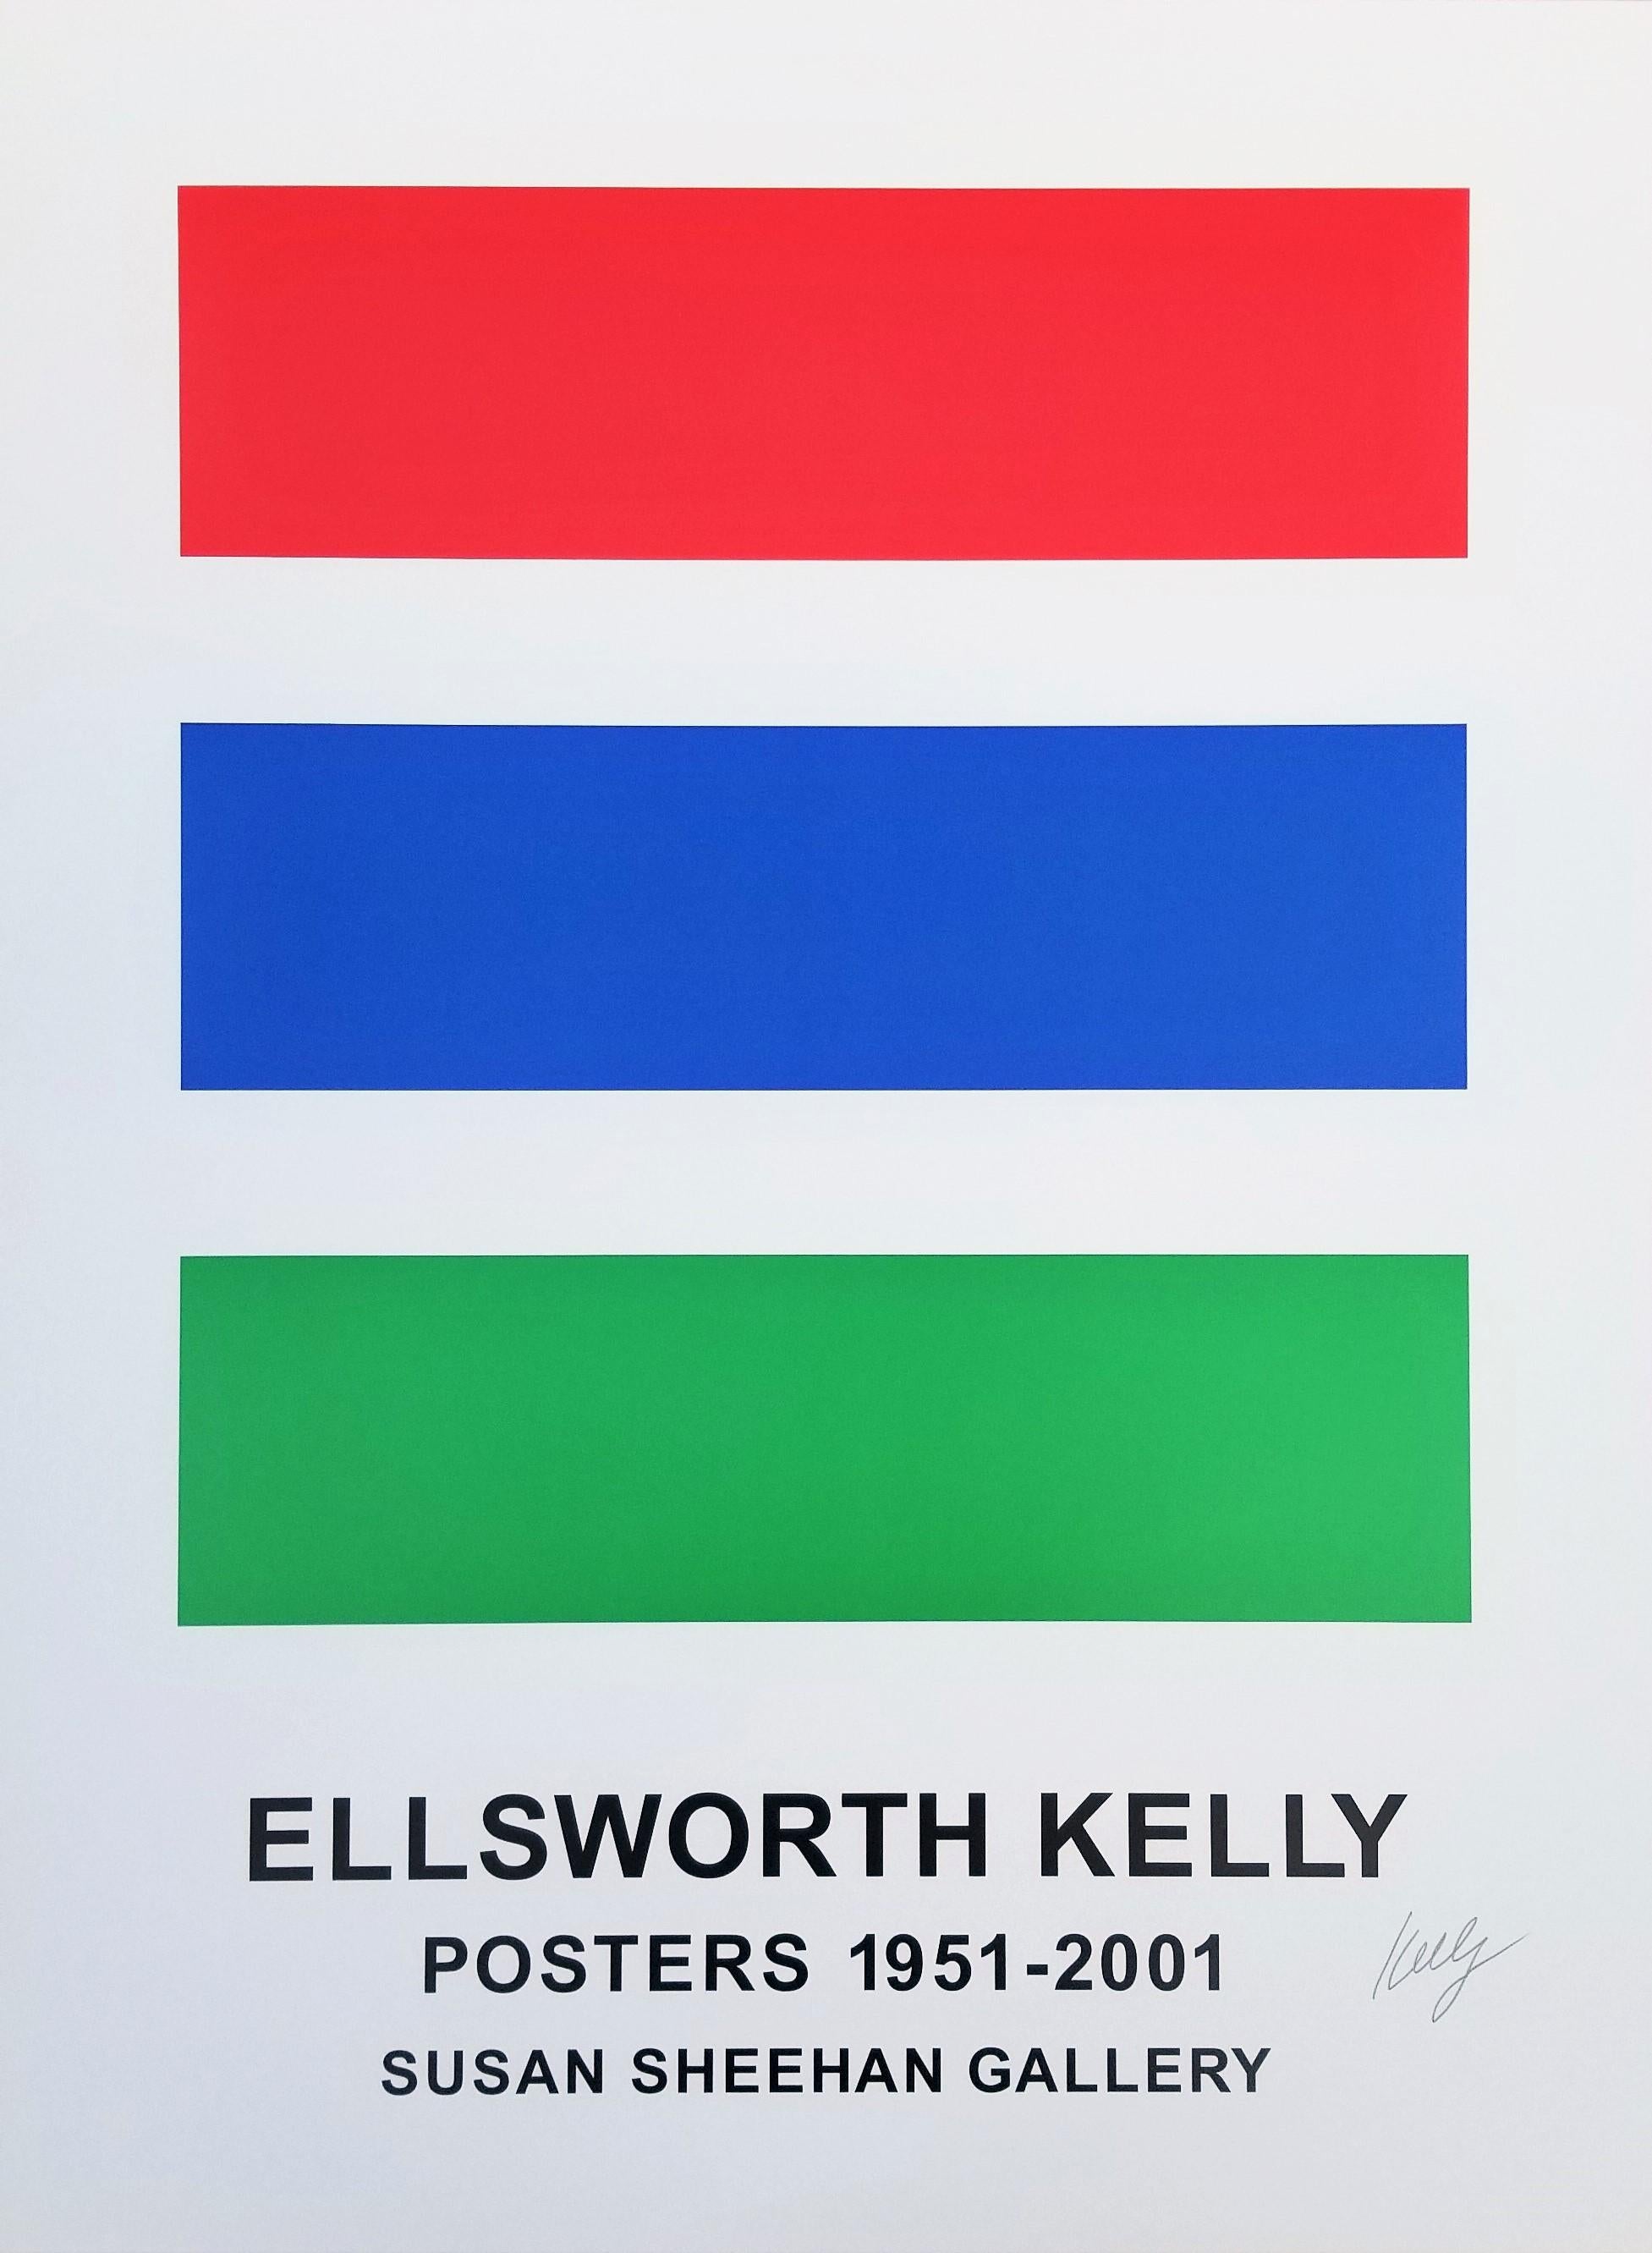 Affiche de la Susan Sheehan Gallery (Ellsworth Kelly Posters 1951-2001)